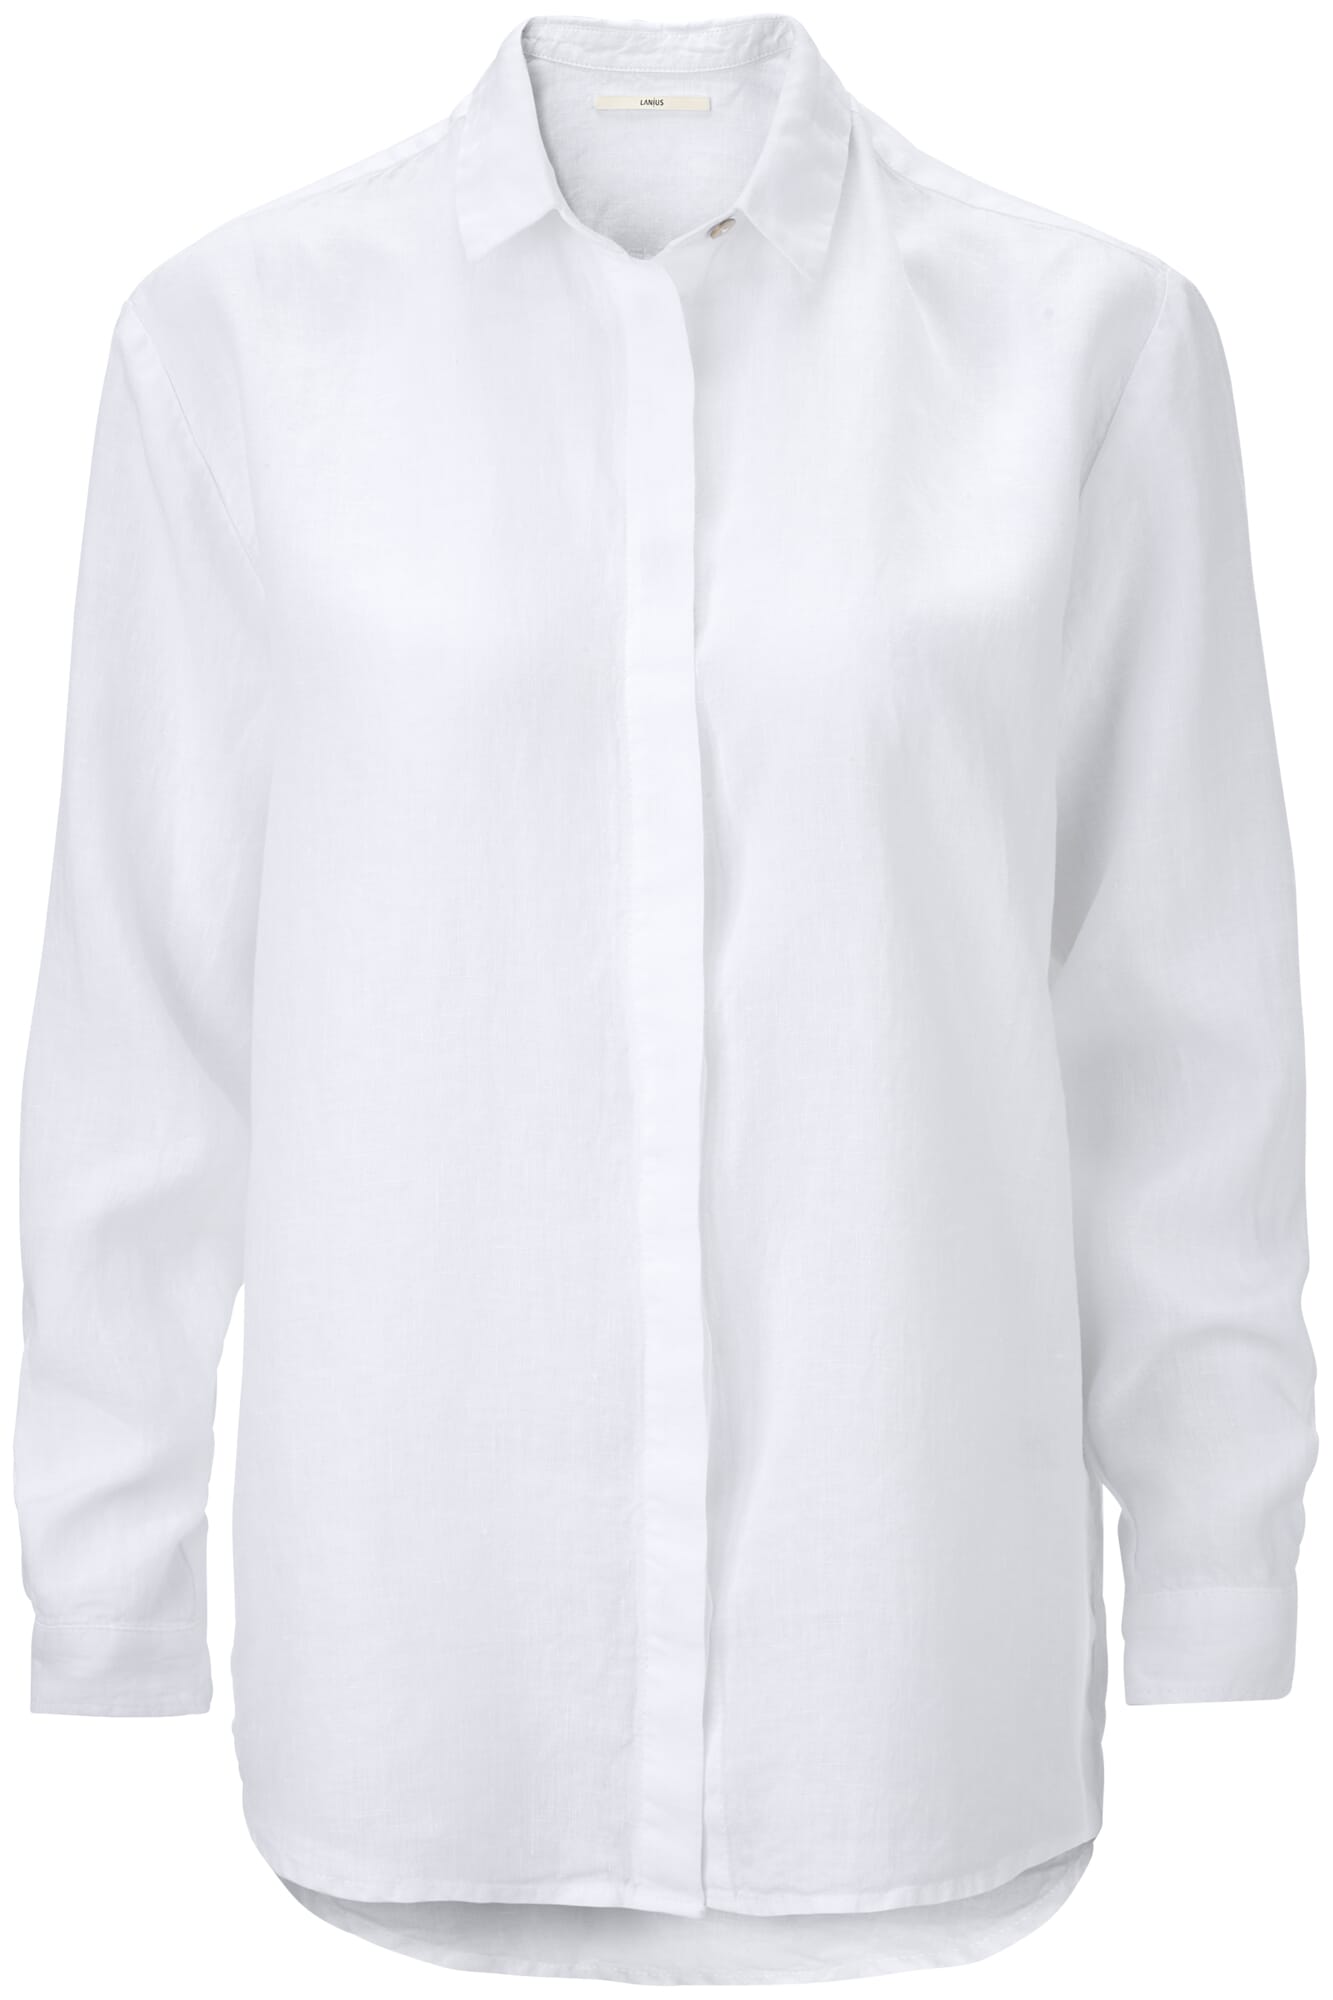 Mode Blouses Linnen blouses 120% Lino Linnen blouse wit zakelijke stijl 